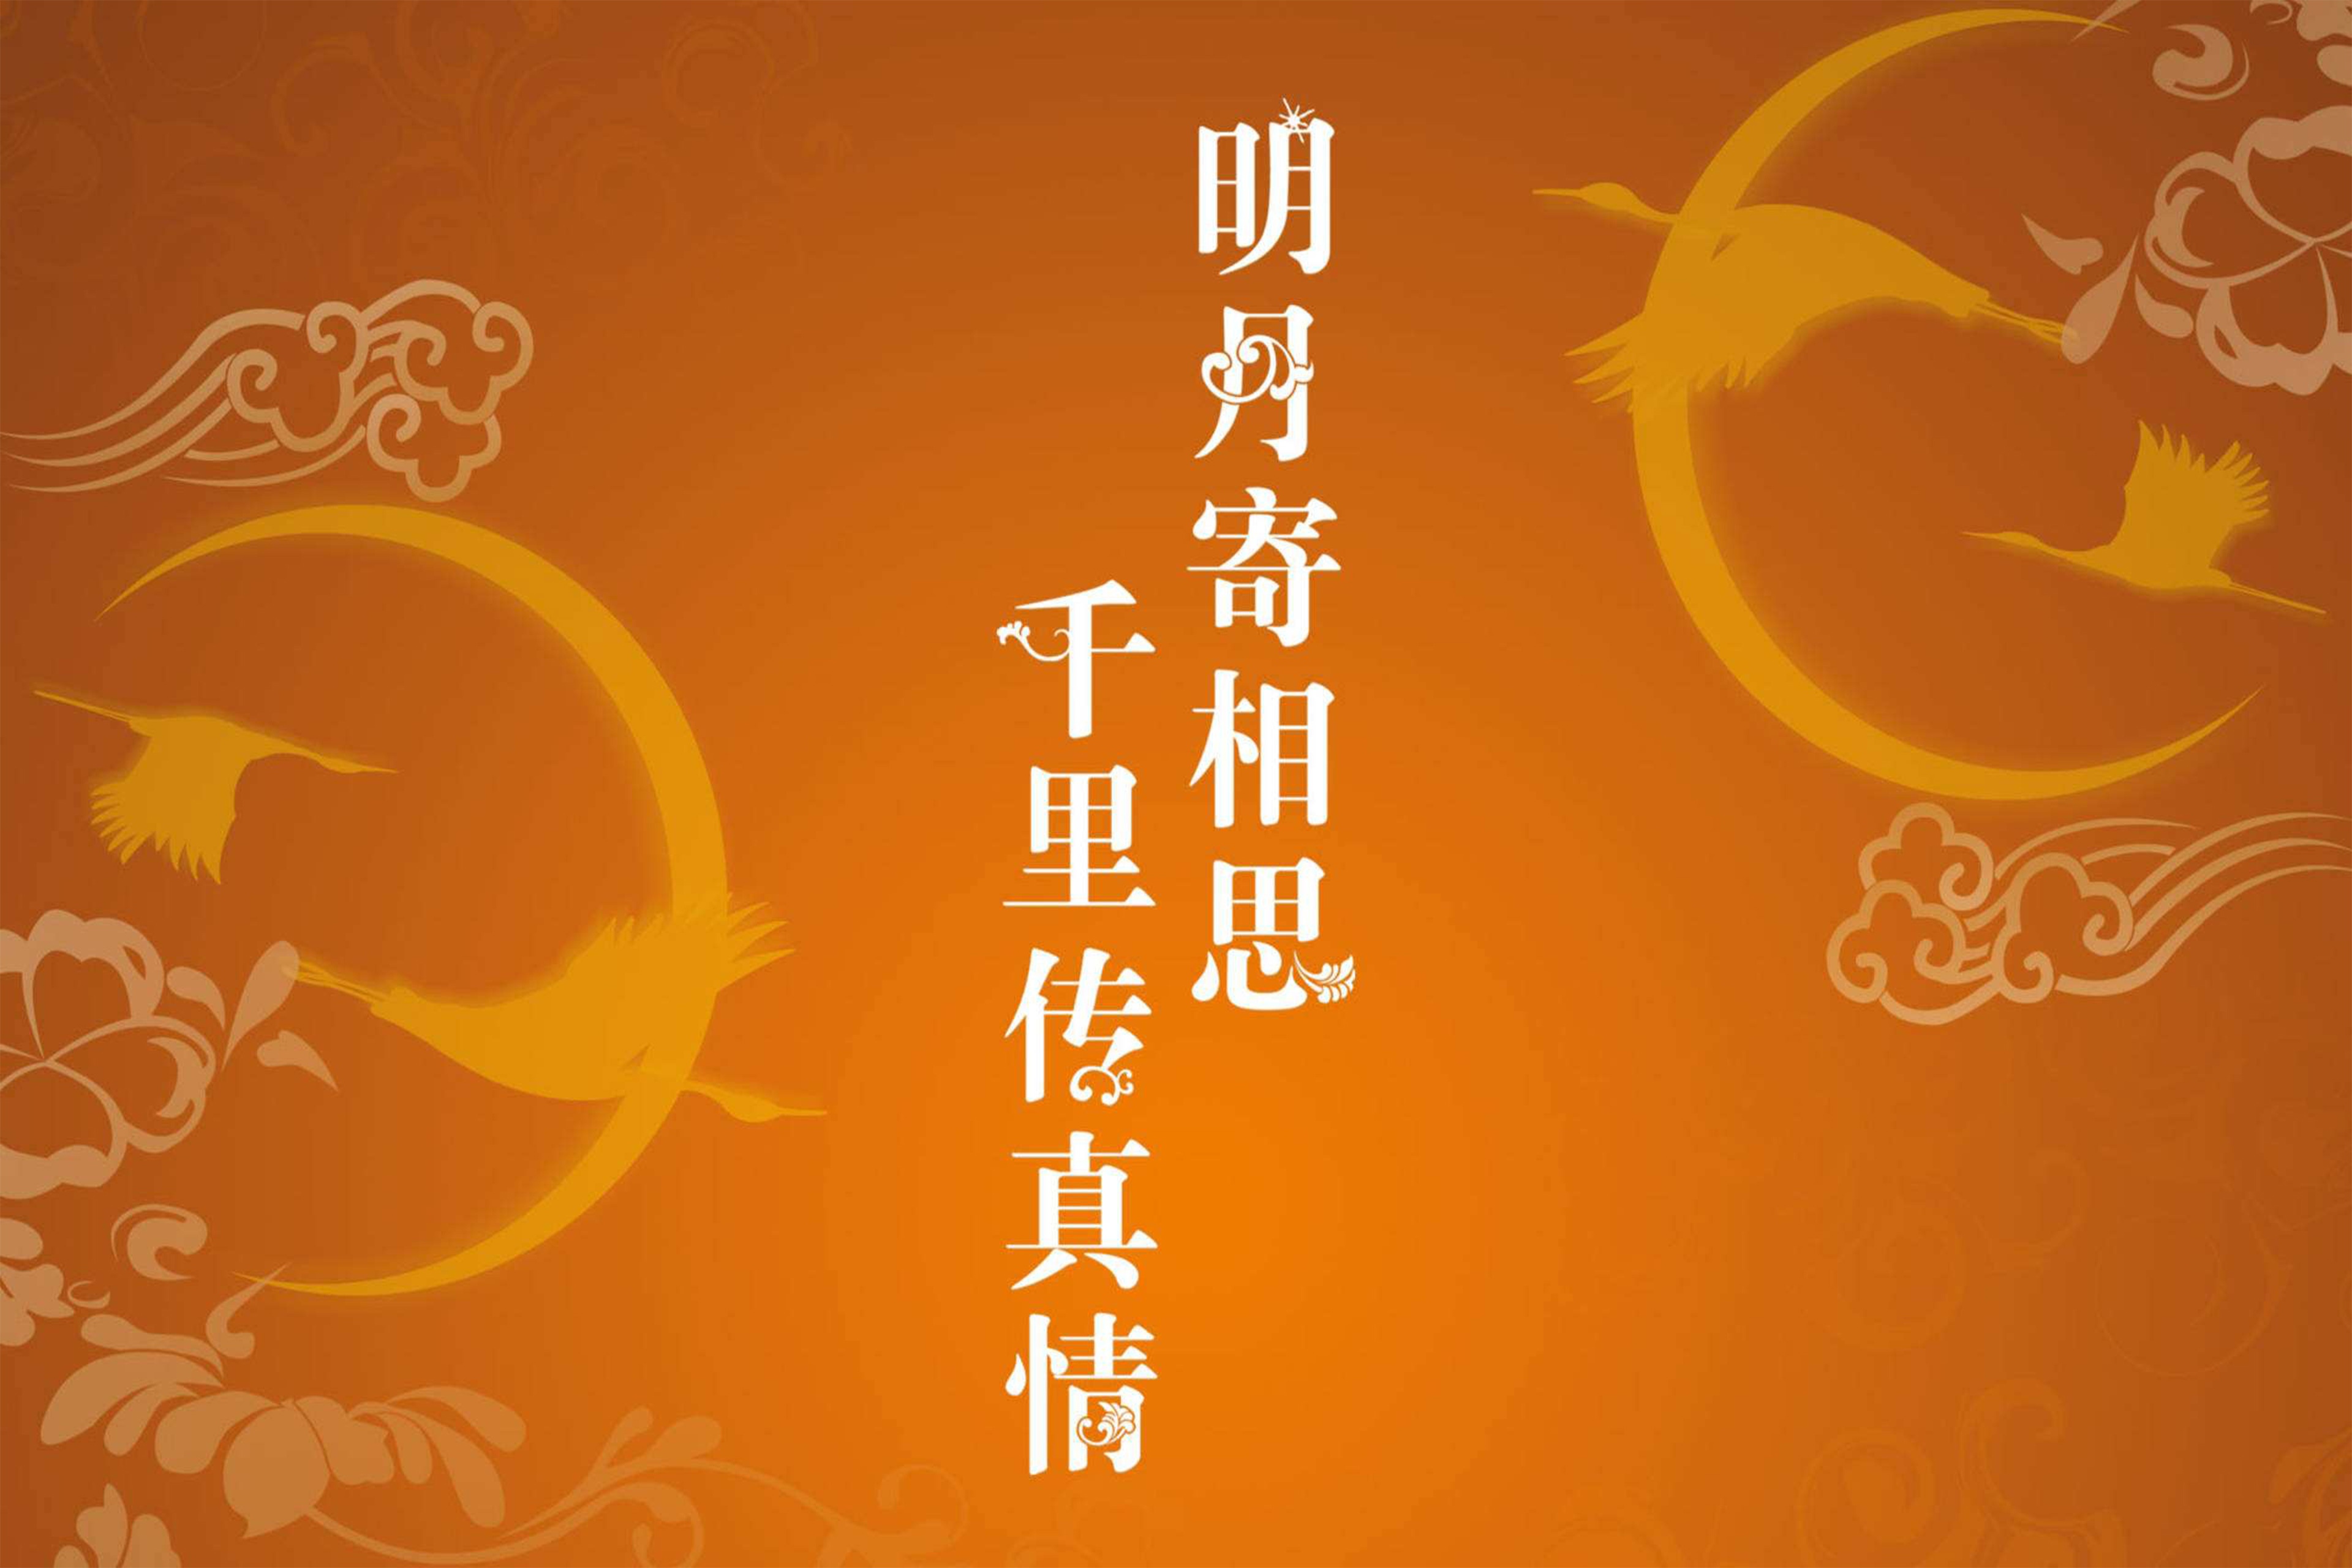 中秋节团圆唯美文字图片桌面壁纸